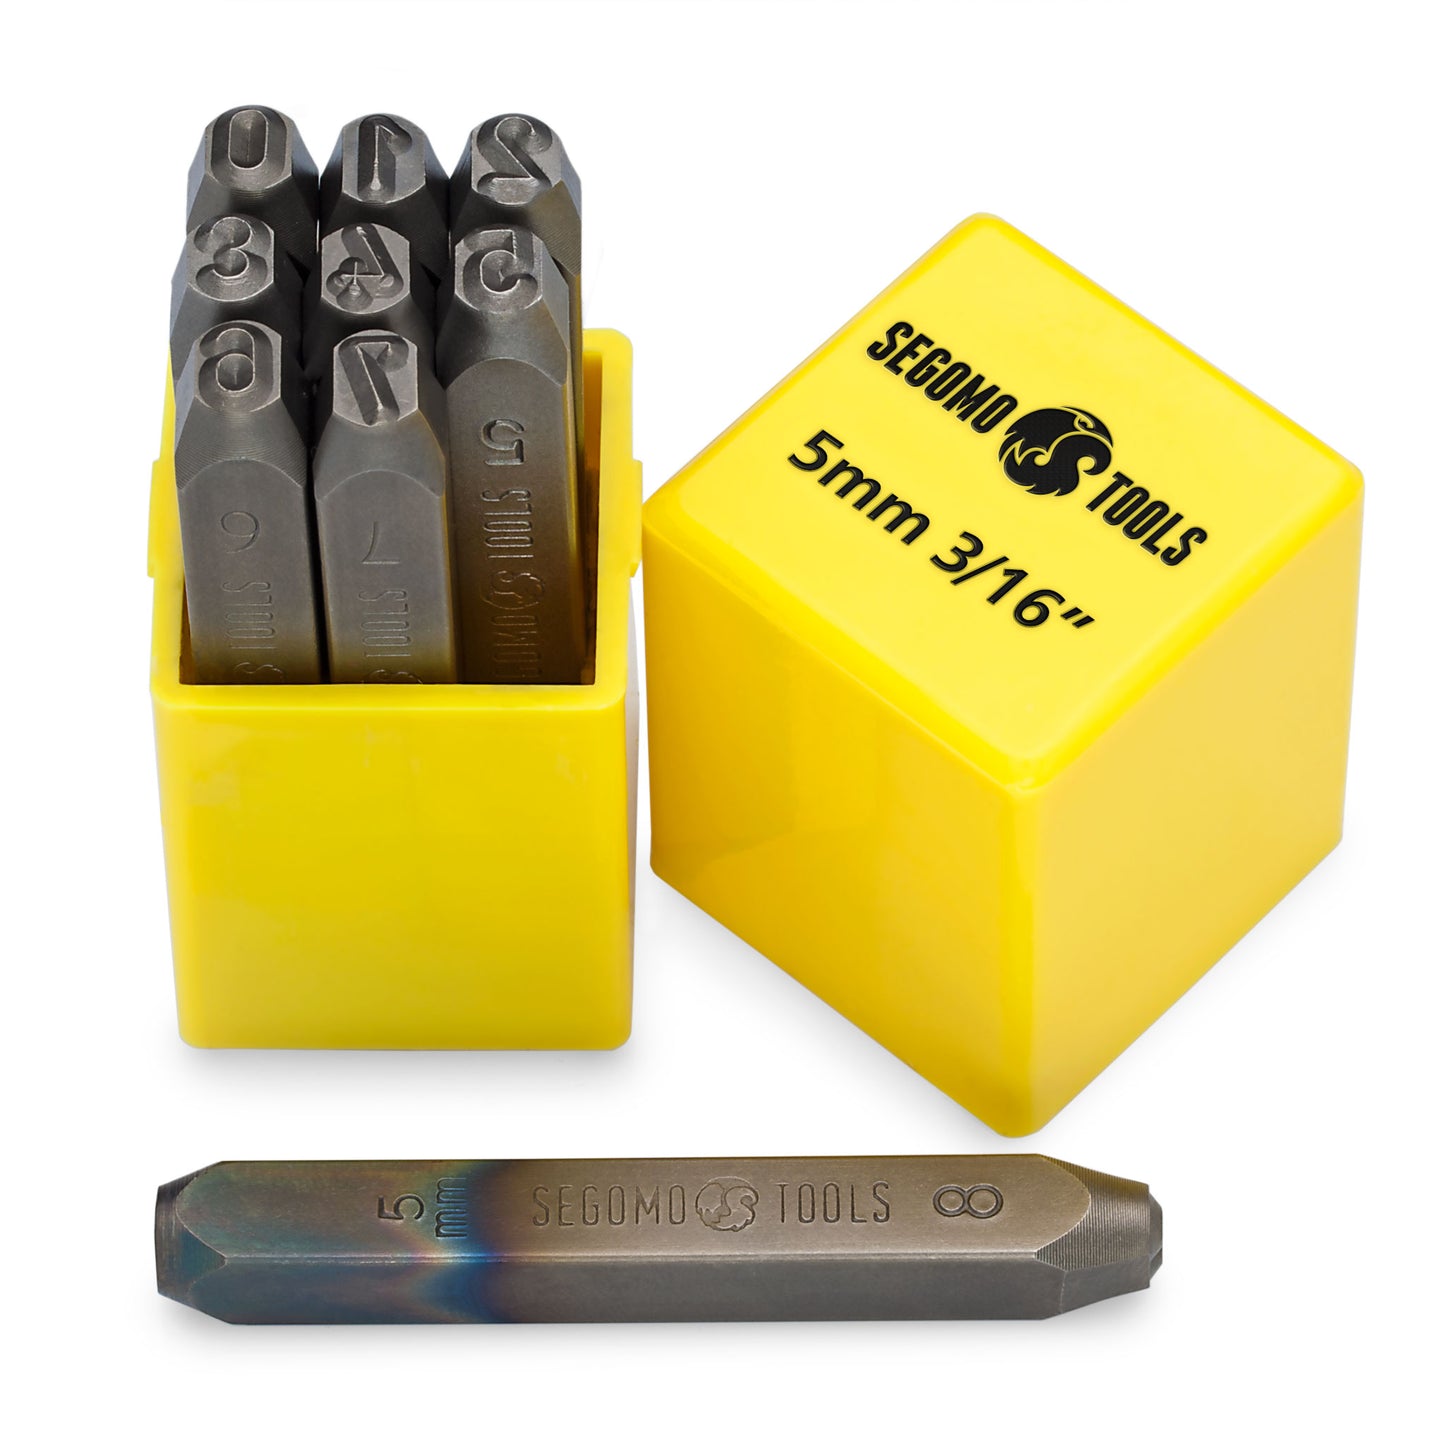 Segomo Tools Juego de sellos perforadores de números profesionales, 9 piezas, 5 mm, 3/16 pulgadas (tamaños: 0-8) (para cuero, madera, cobre, latón, aluminio, acero dulce) - NUMBER316